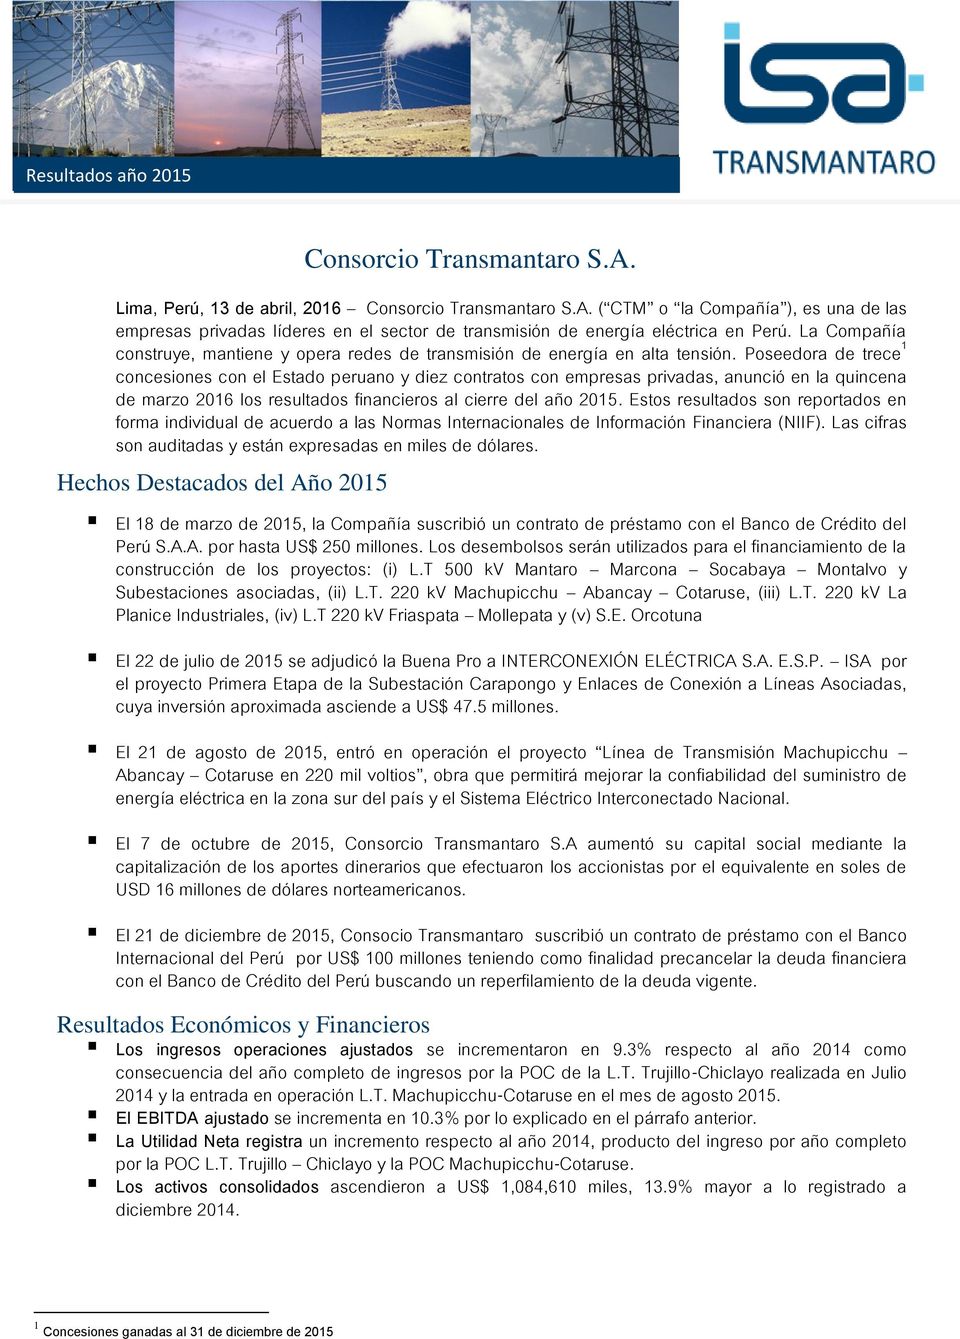 Poseedora de trece 1 concesiones con el Estado peruano y diez contratos con empresas privadas, anunció en la quincena de marzo 2016 los resultados financieros al cierre del año 2015.